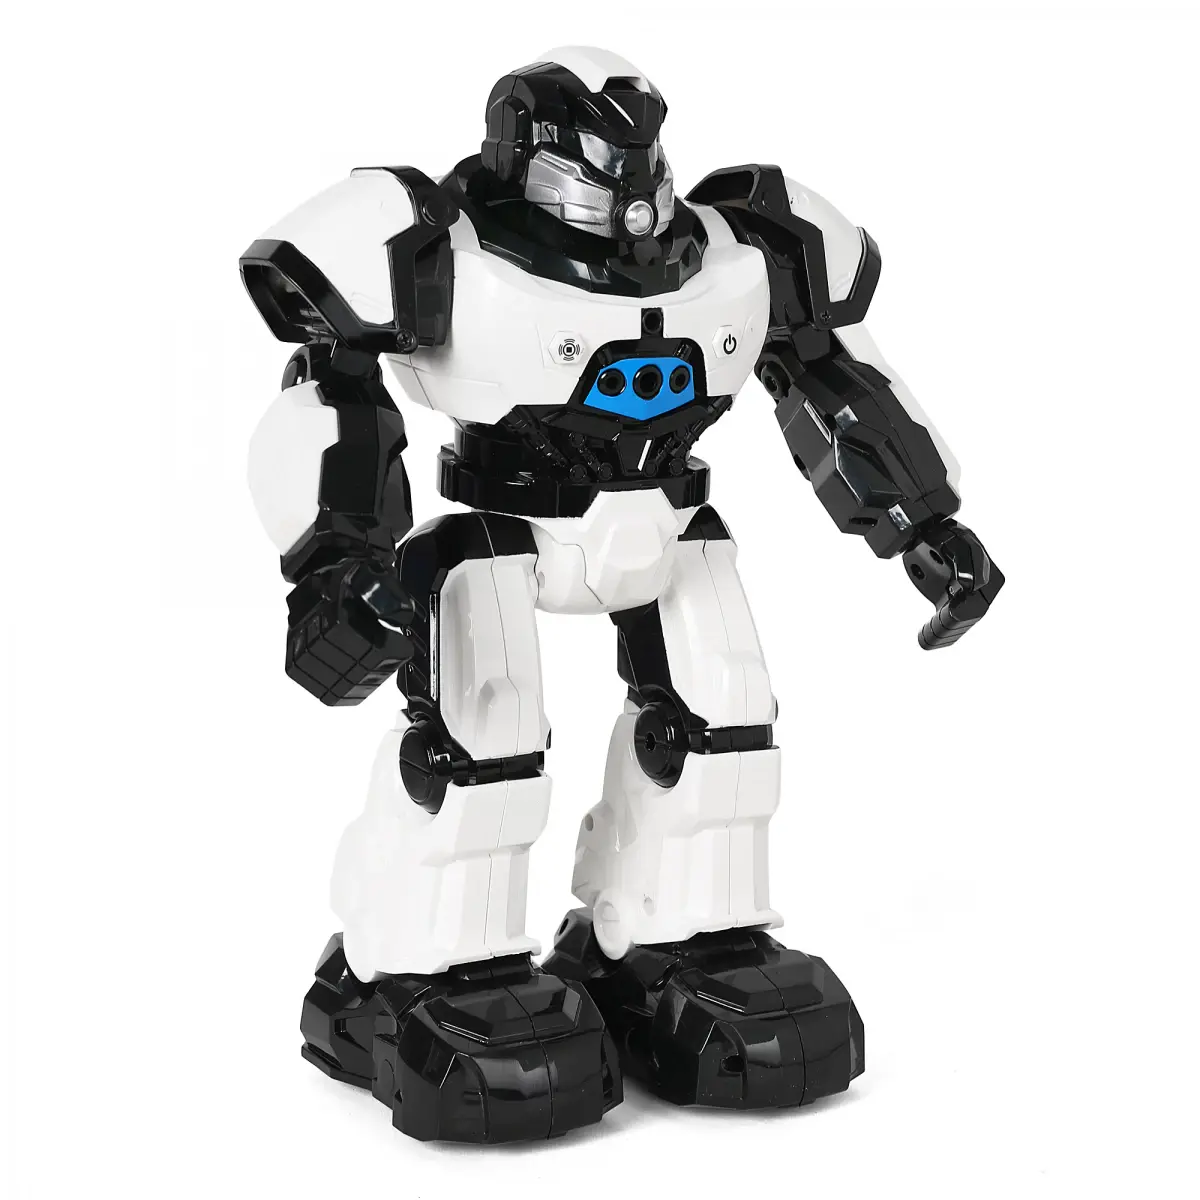 Ralleyz Crazone Intelligent Robot, 8Y+, Black & White